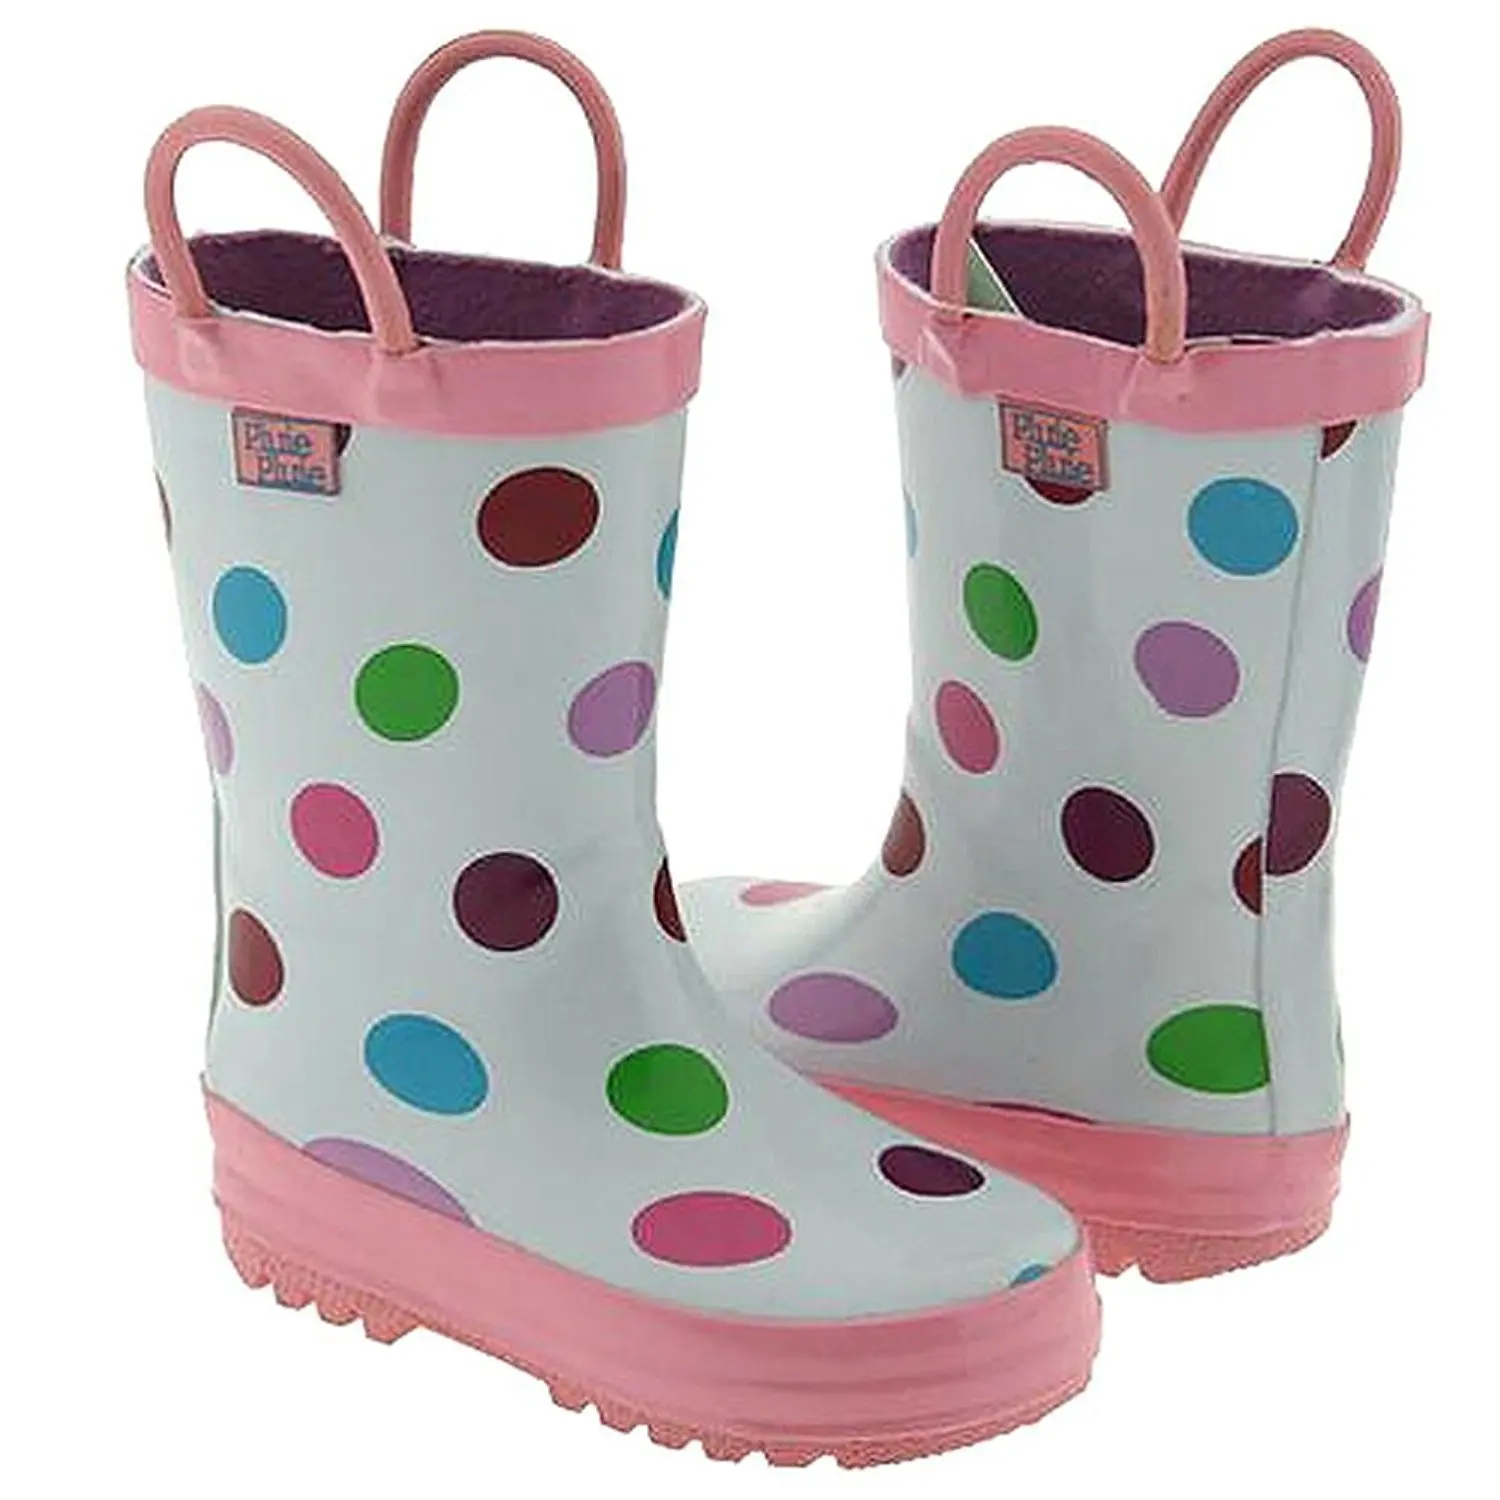 girls rain boots size 5